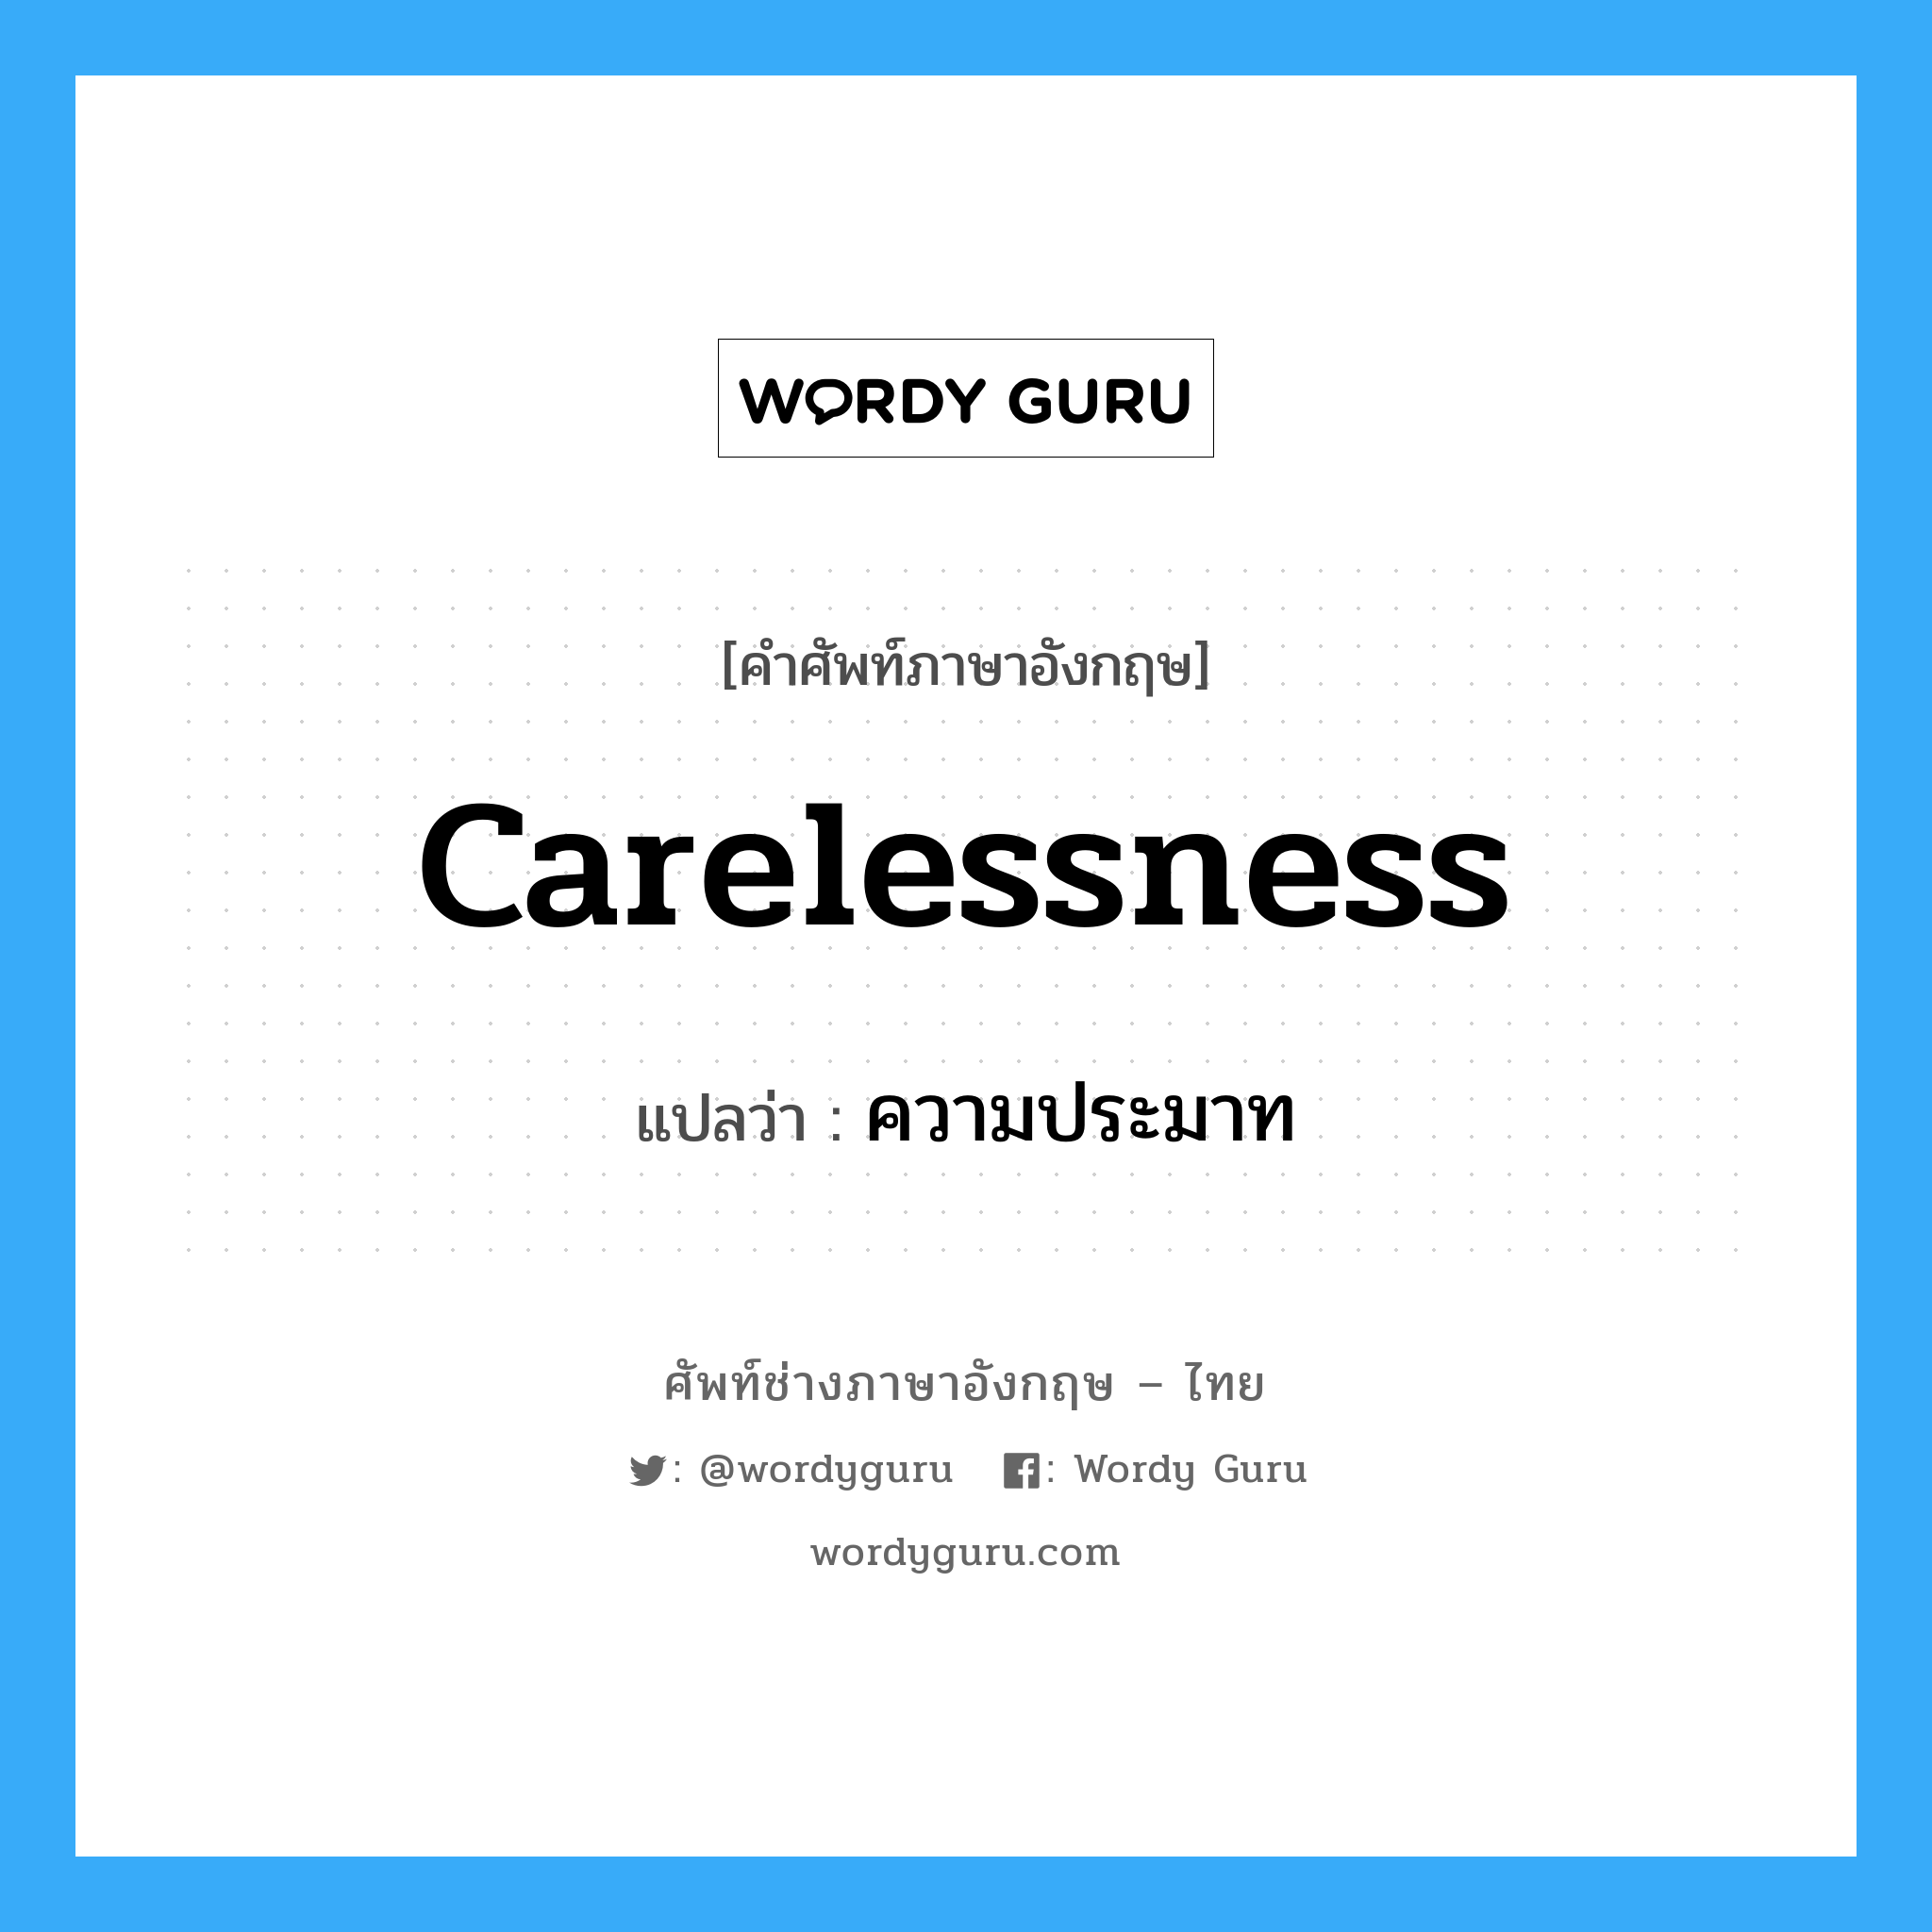 ความประมาท ภาษาอังกฤษ?, คำศัพท์ช่างภาษาอังกฤษ - ไทย ความประมาท คำศัพท์ภาษาอังกฤษ ความประมาท แปลว่า Carelessness